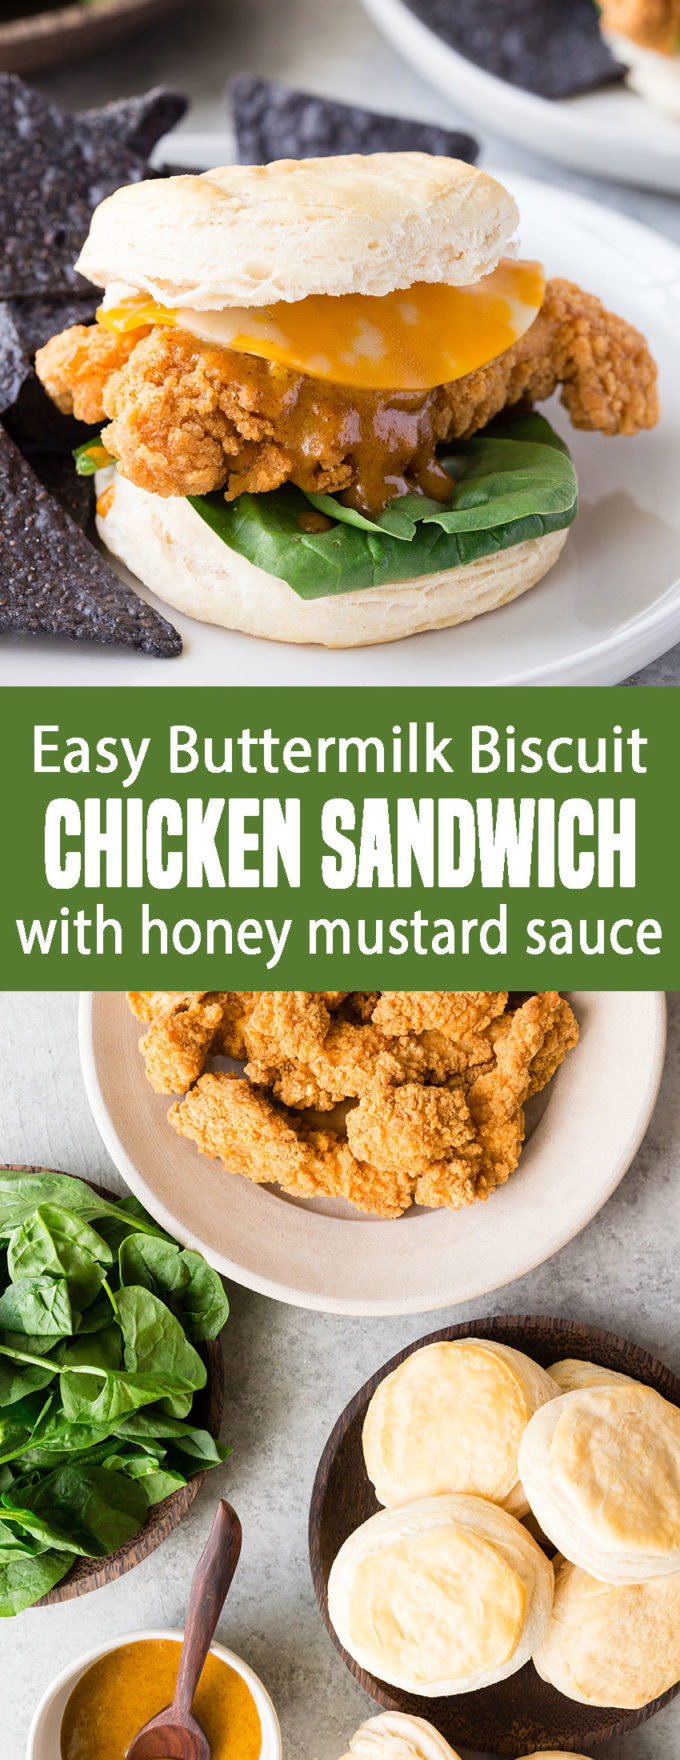 Easy buttermilk biscuit chicken sandwiches with honey mustard sauce